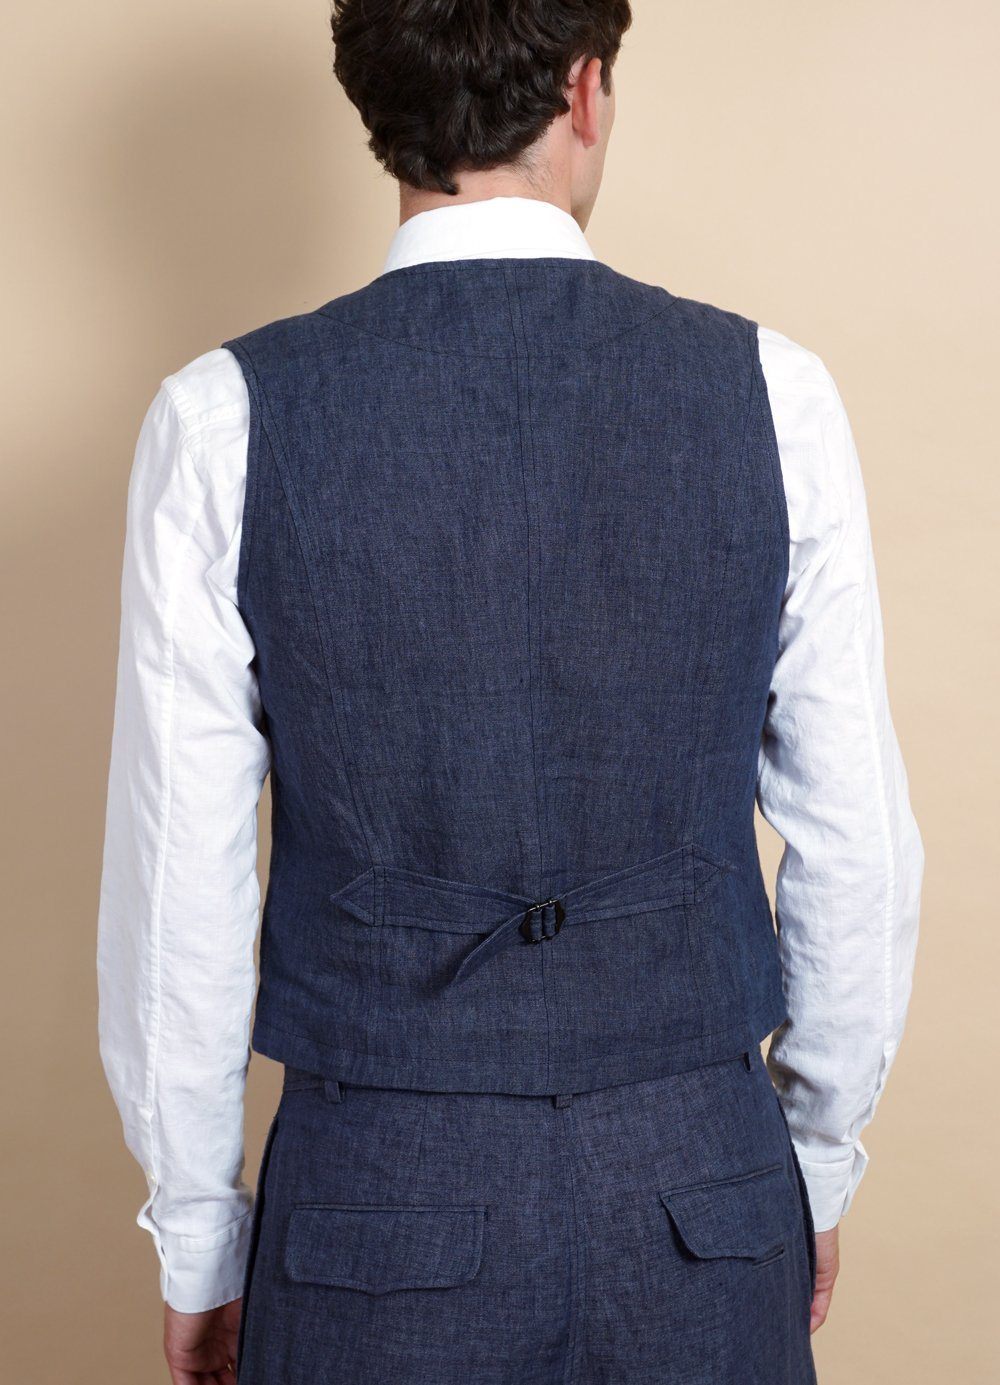 HANSEN GARMENTS - KALLE | Casual Classic Vest | Blue Delave - HANSEN Garments